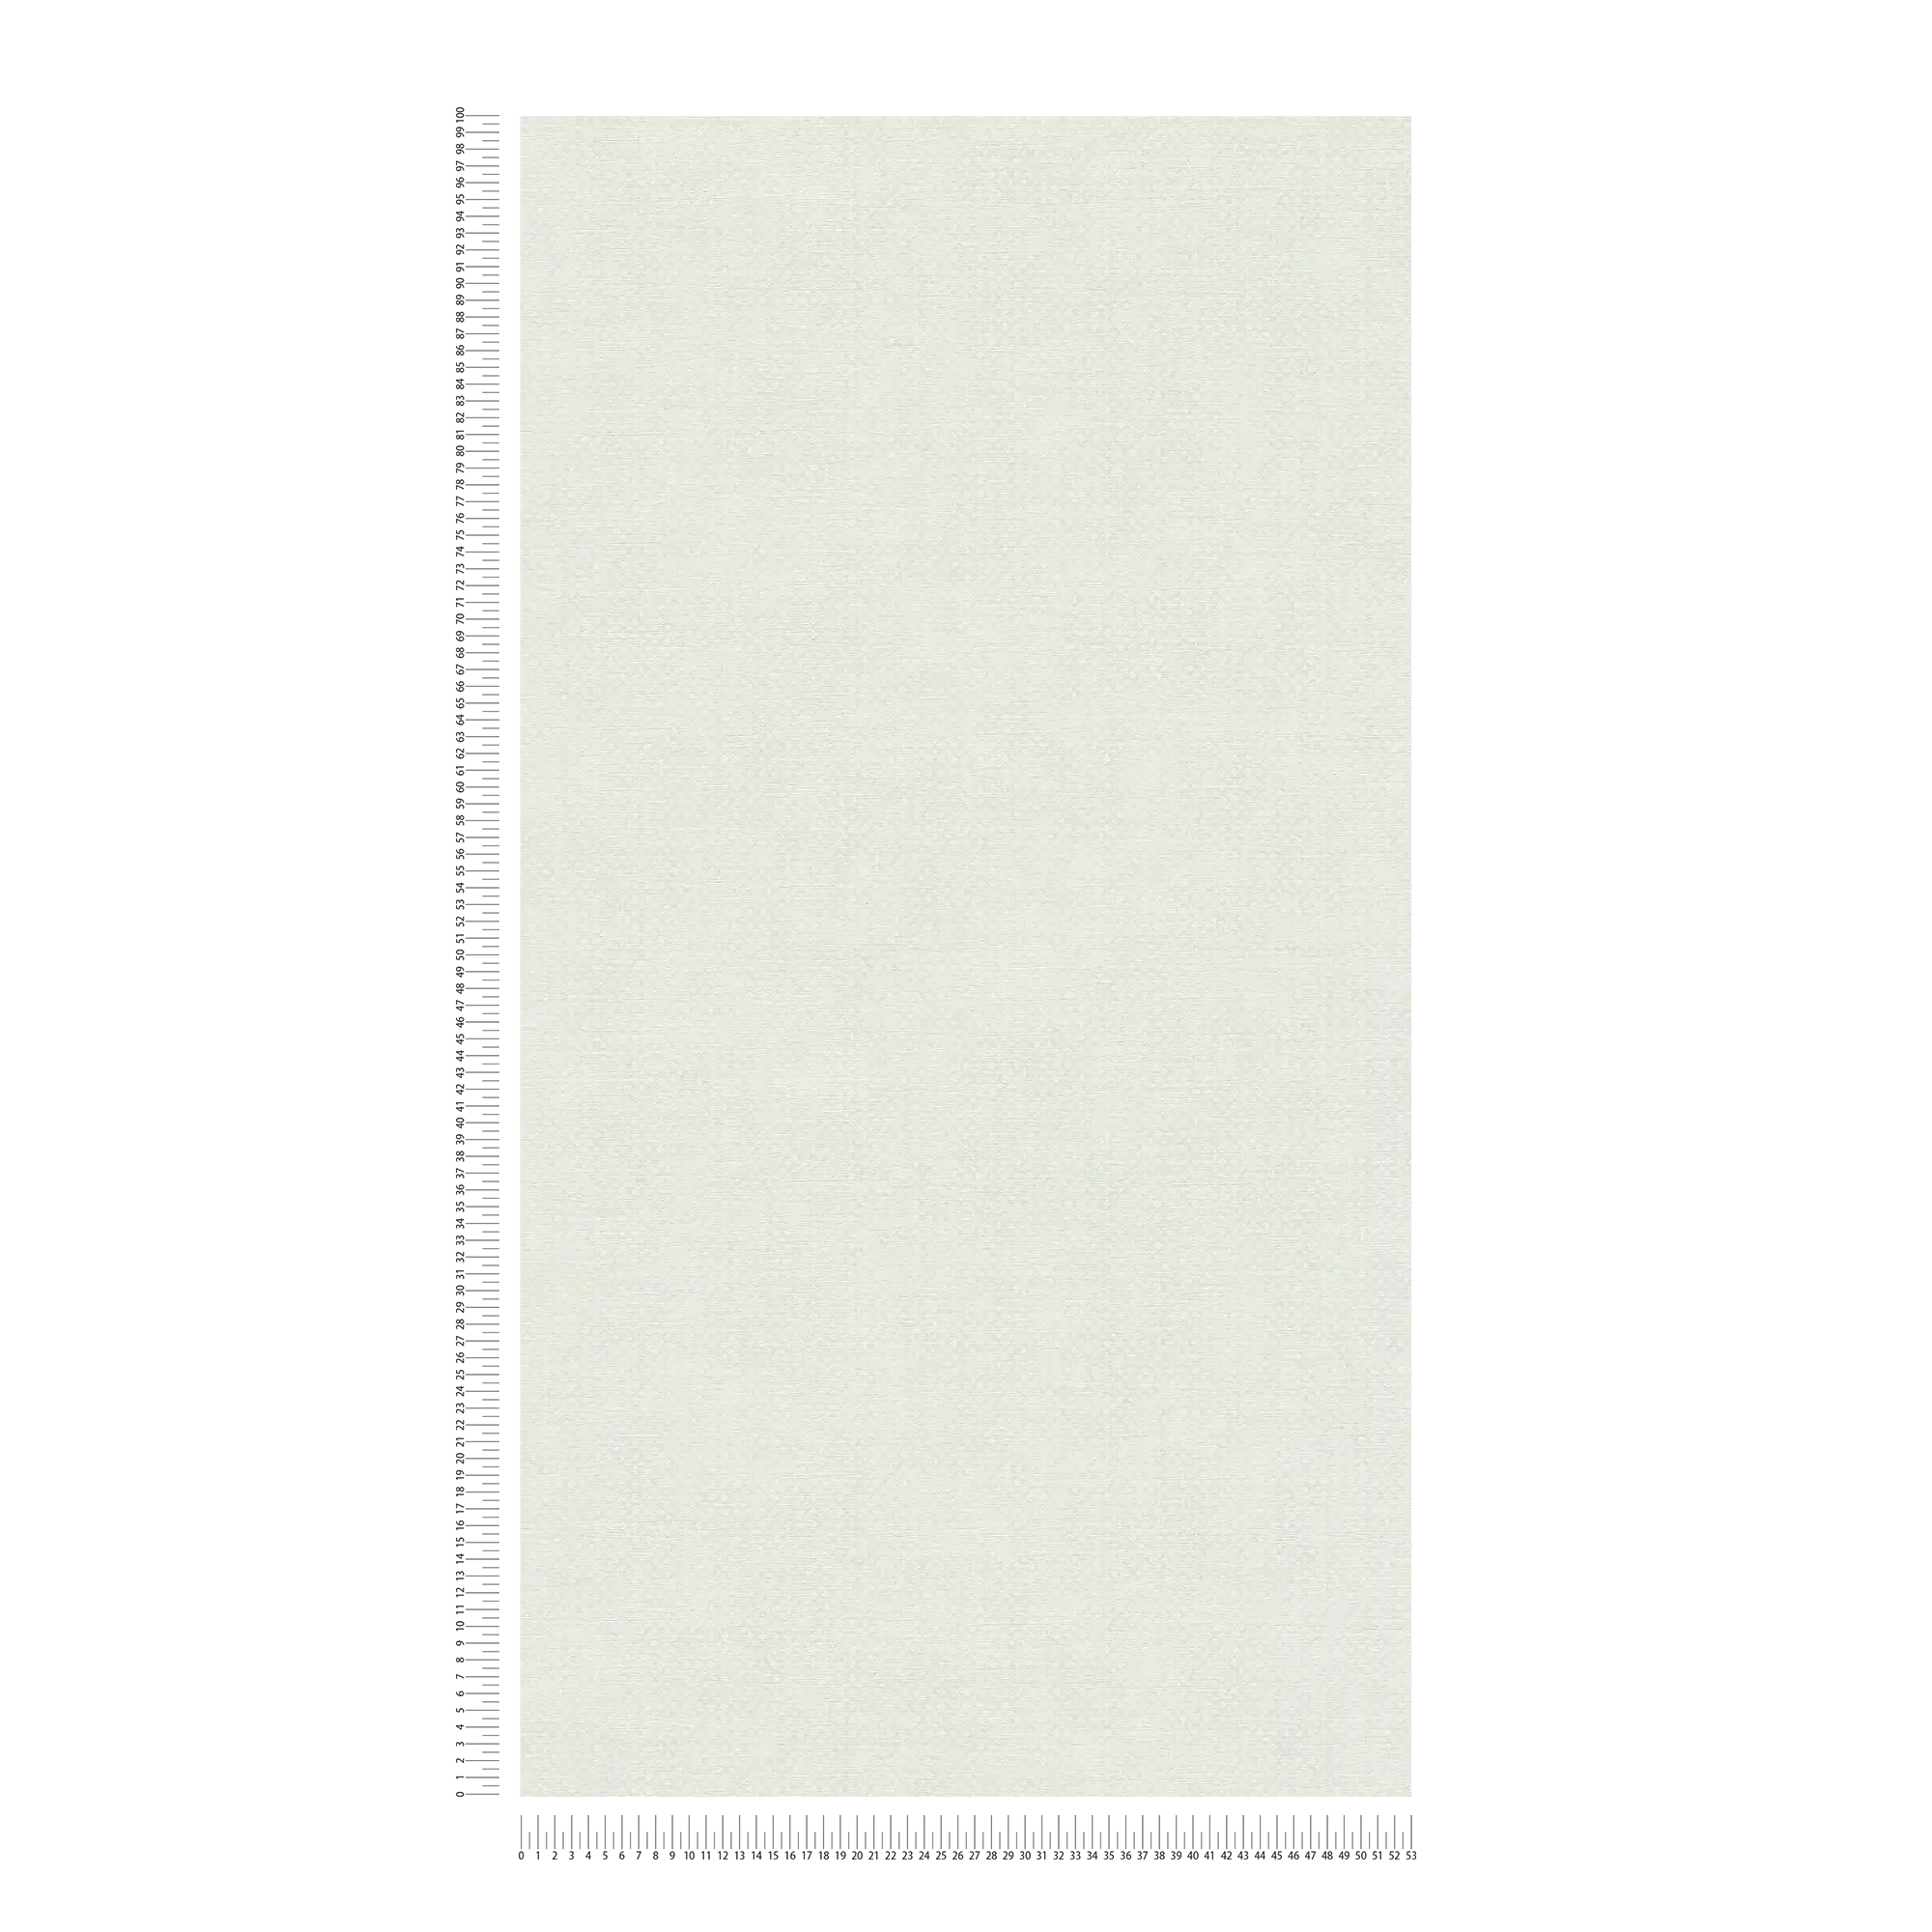             Papier peint intissé à motif finement structuré - gris, blanc
        